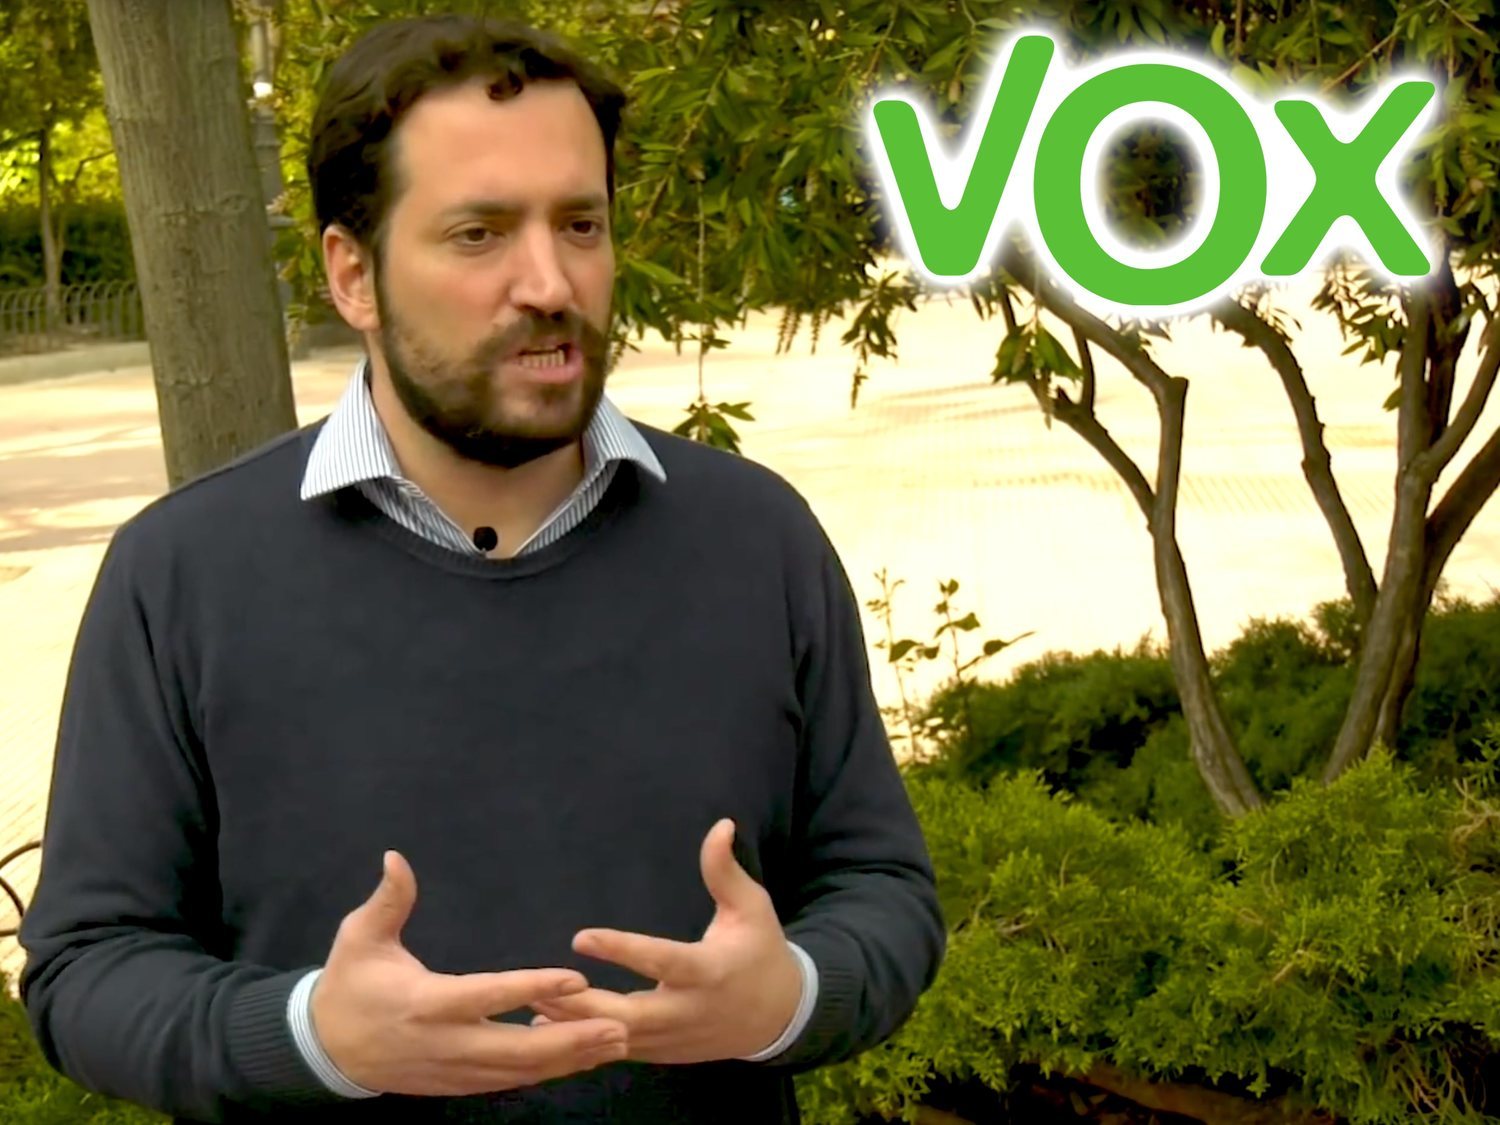 Un candidato de VOX, sobre el activismo de las minorías: "Son prepotentes, dan ganas de oprimirlas"